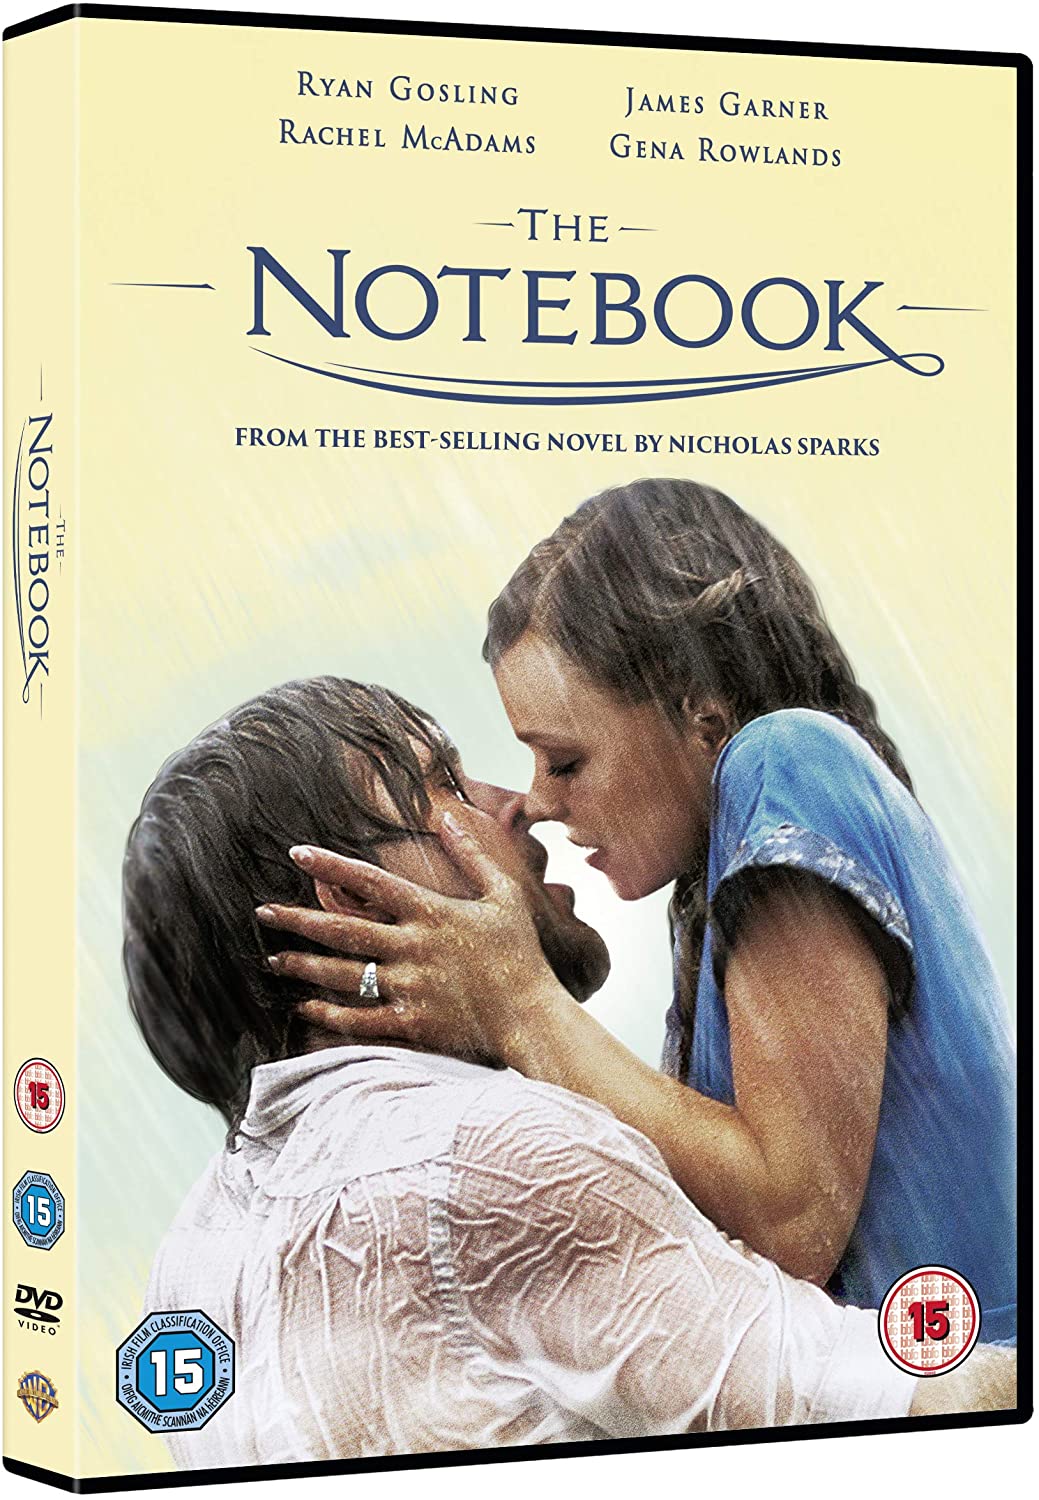 The Notebook [2004] [2019] - Romance/Drama [DVD]